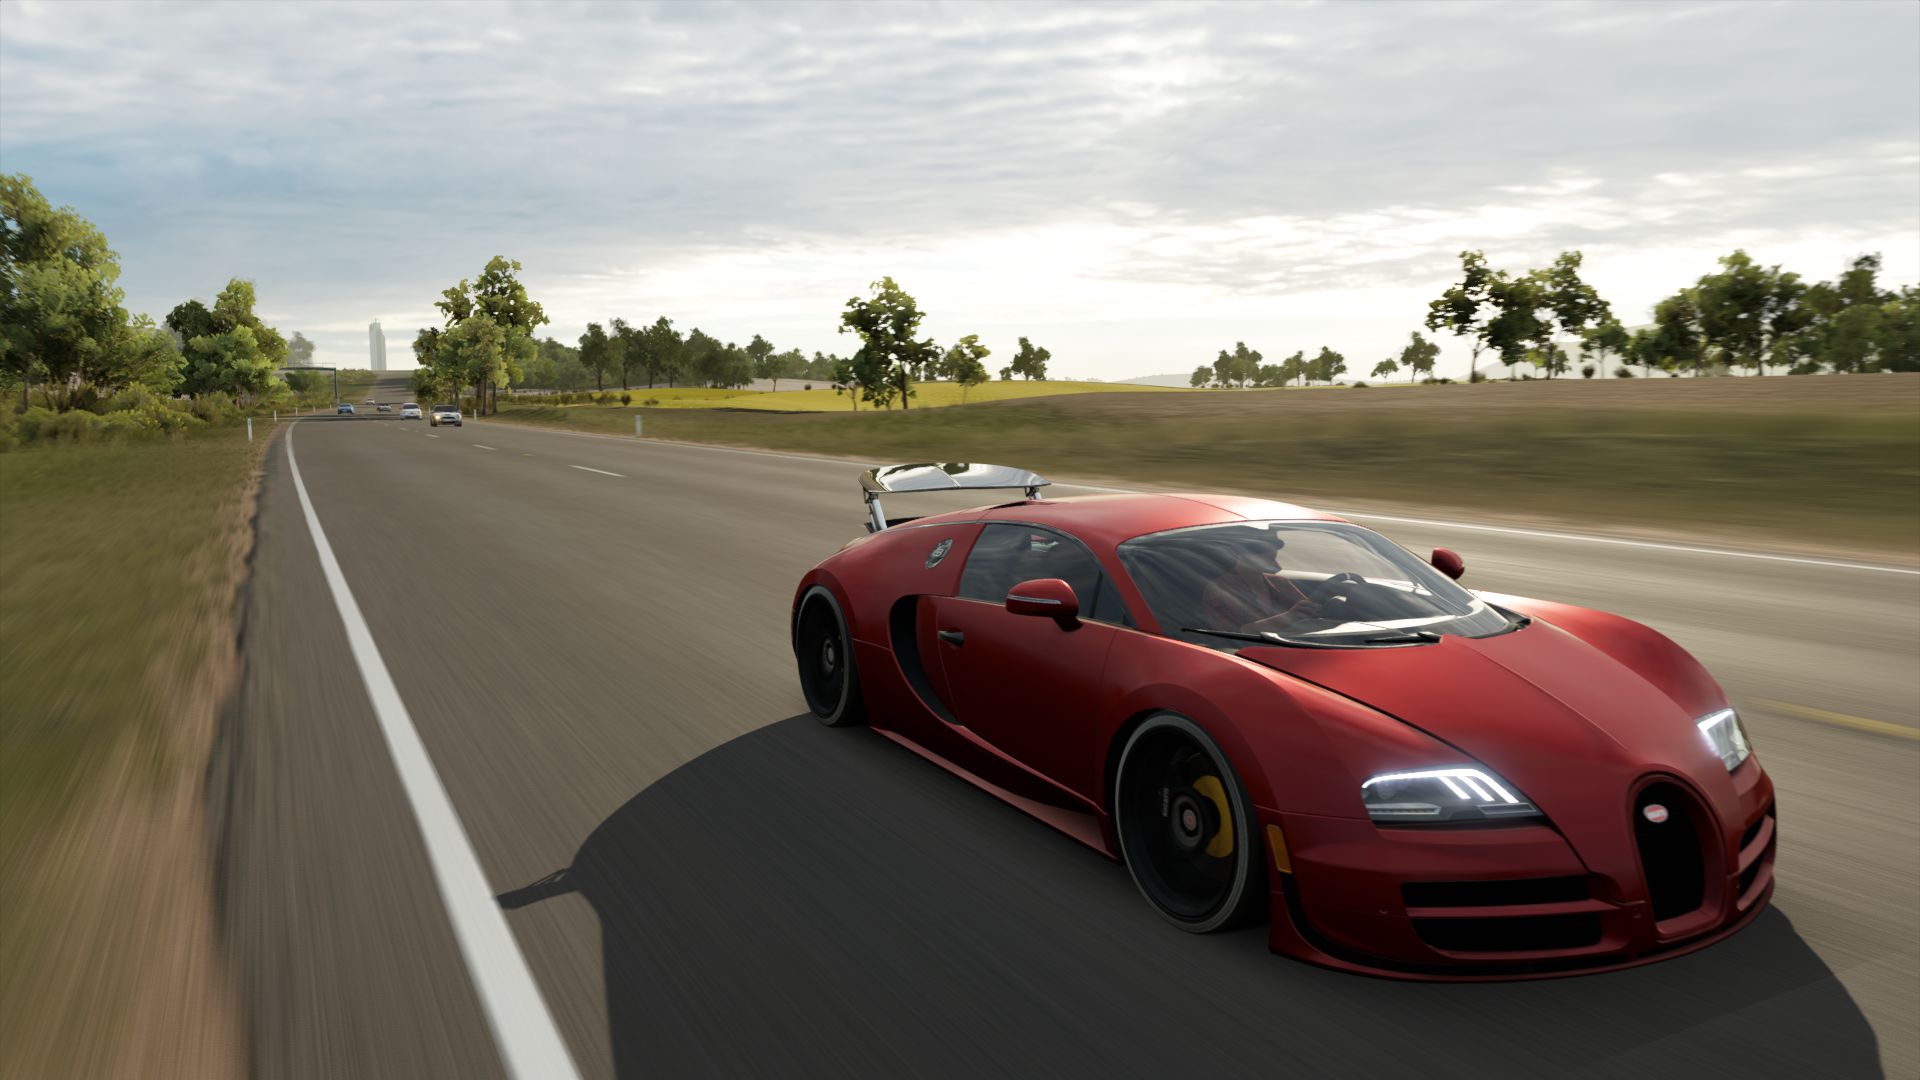 Free download wallpaper Bugatti Veyron, Video Game, Forza Horizon 3, Forza on your PC desktop